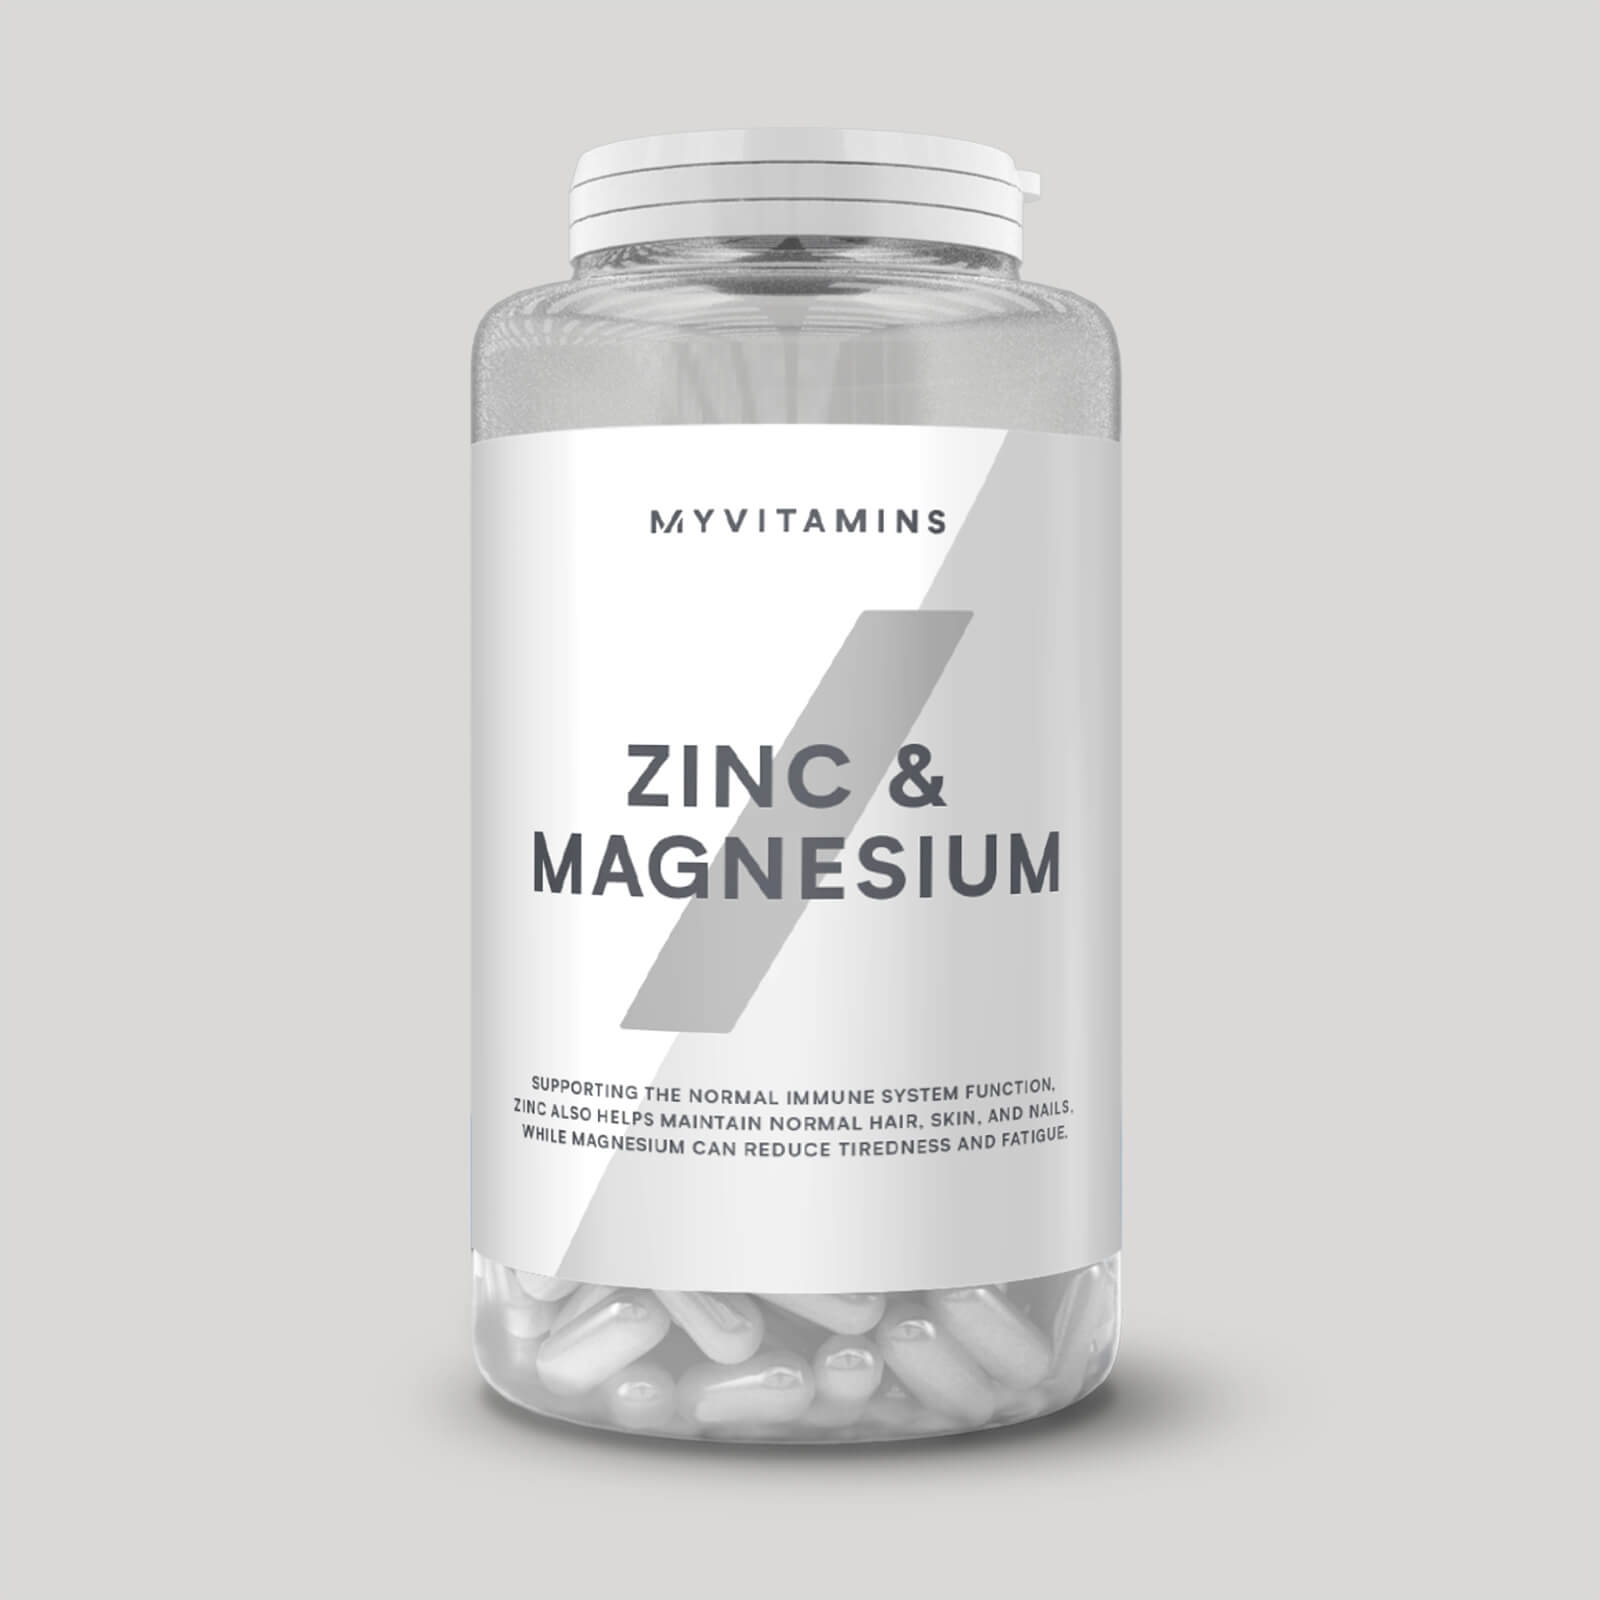 Myvitamins Zinc & Magnesium Capsules - 90Capsules